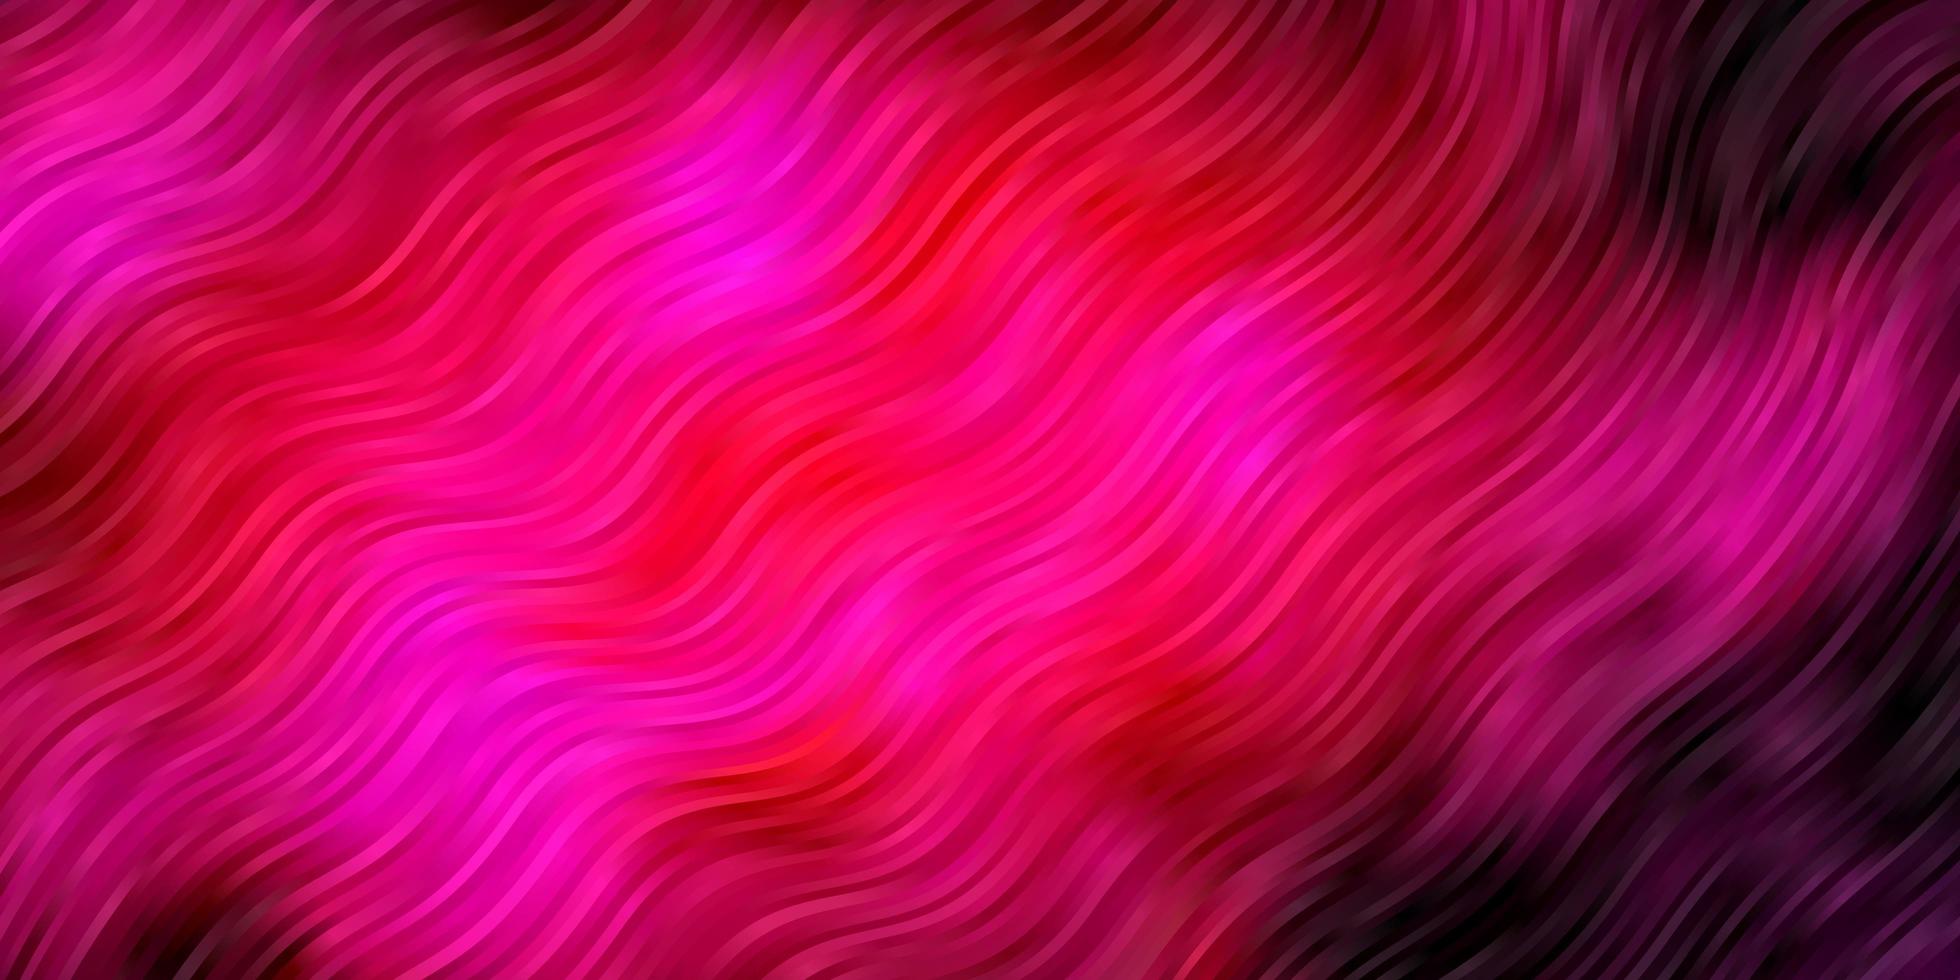 fundo vector rosa escuro com linhas.